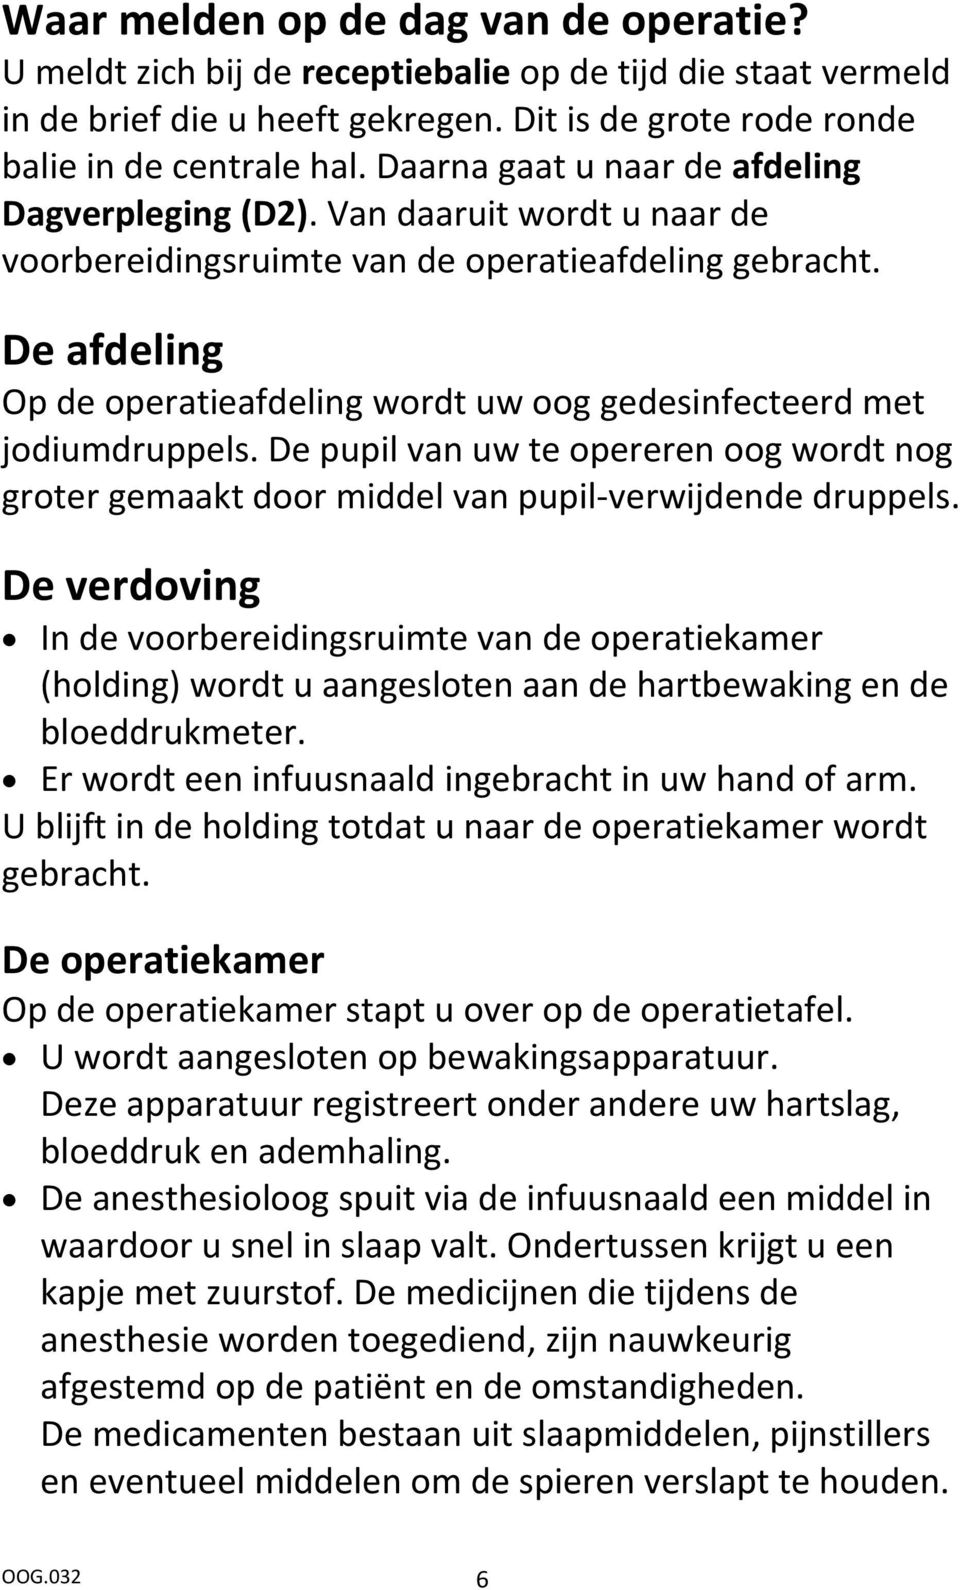 Monumentaal plastic Tegenover Staar diagnose en operatie algehele verdoving: narcose Maatschap  Oogheelkunde IJsselland Ziekenhuis - PDF Free Download